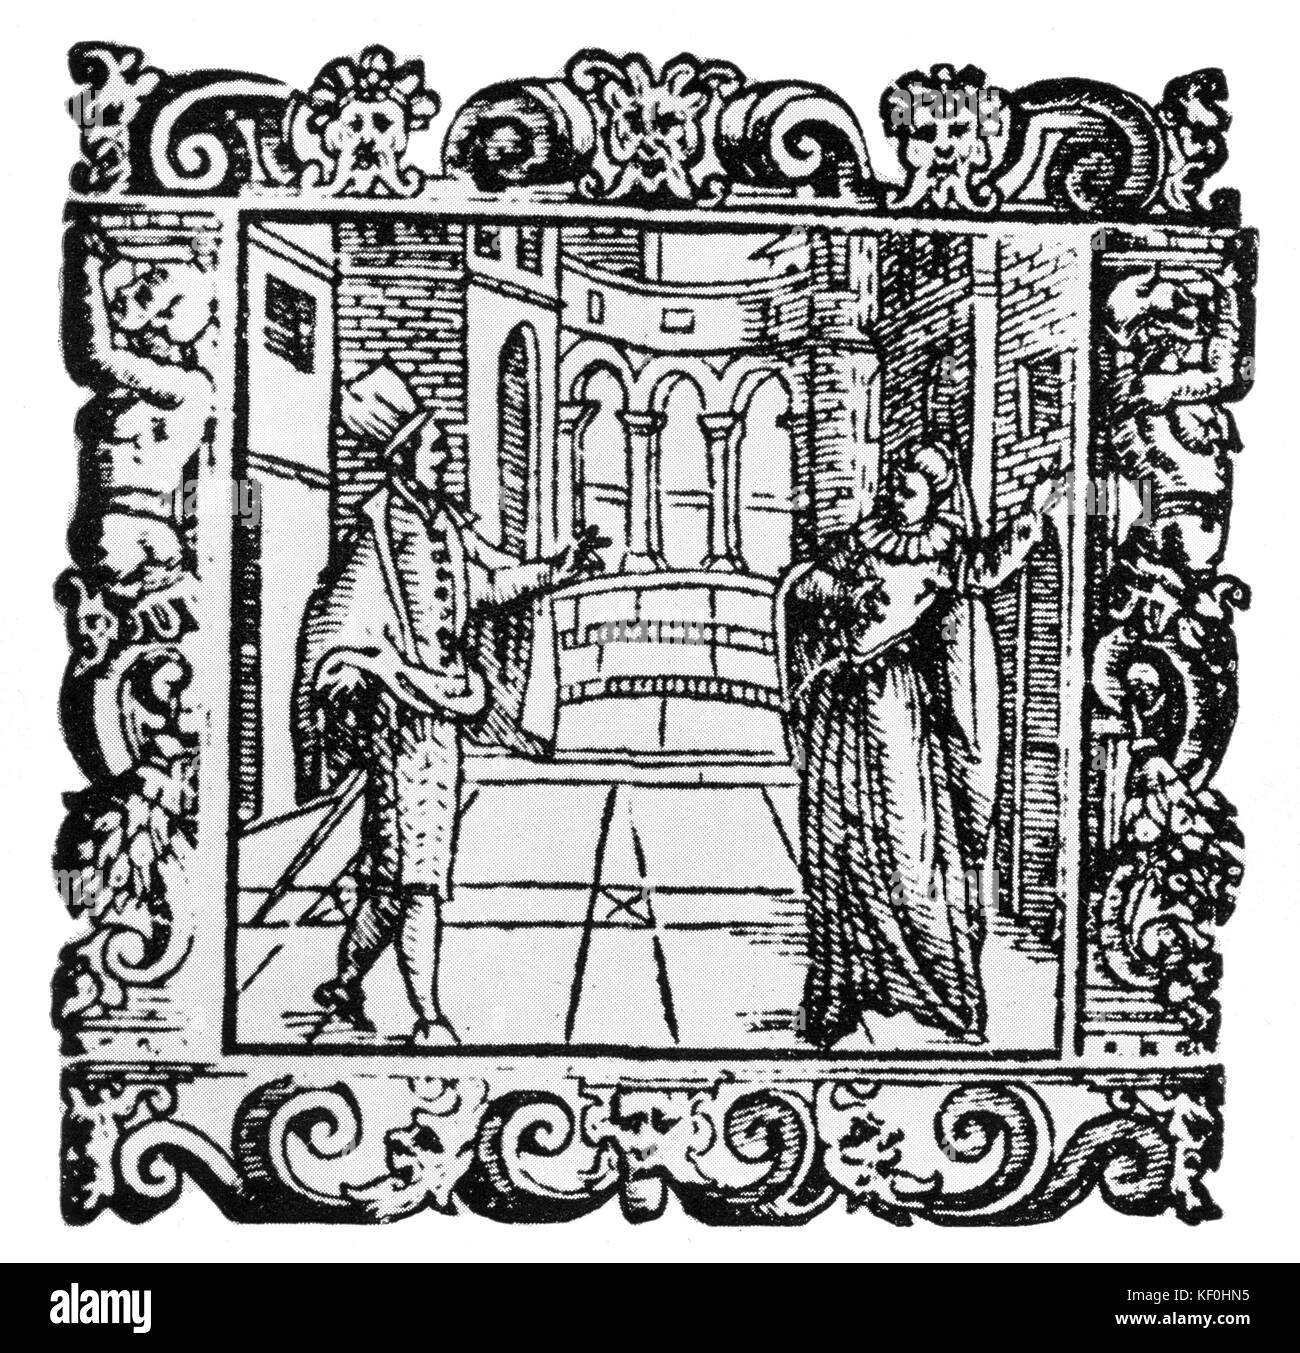 "L'Amfiparnaso" durch Orazio Vecchi, einem madrigal Komödie von 1597. Die Abbildung zeigt die Zeichen Isabella und Lucio aus der 1610 Ausgabe des "L'Amfiparnaso". OV Italienischer Komponist vom 6. Dezember 1550 bis 19. Februar 1605. Stockfoto